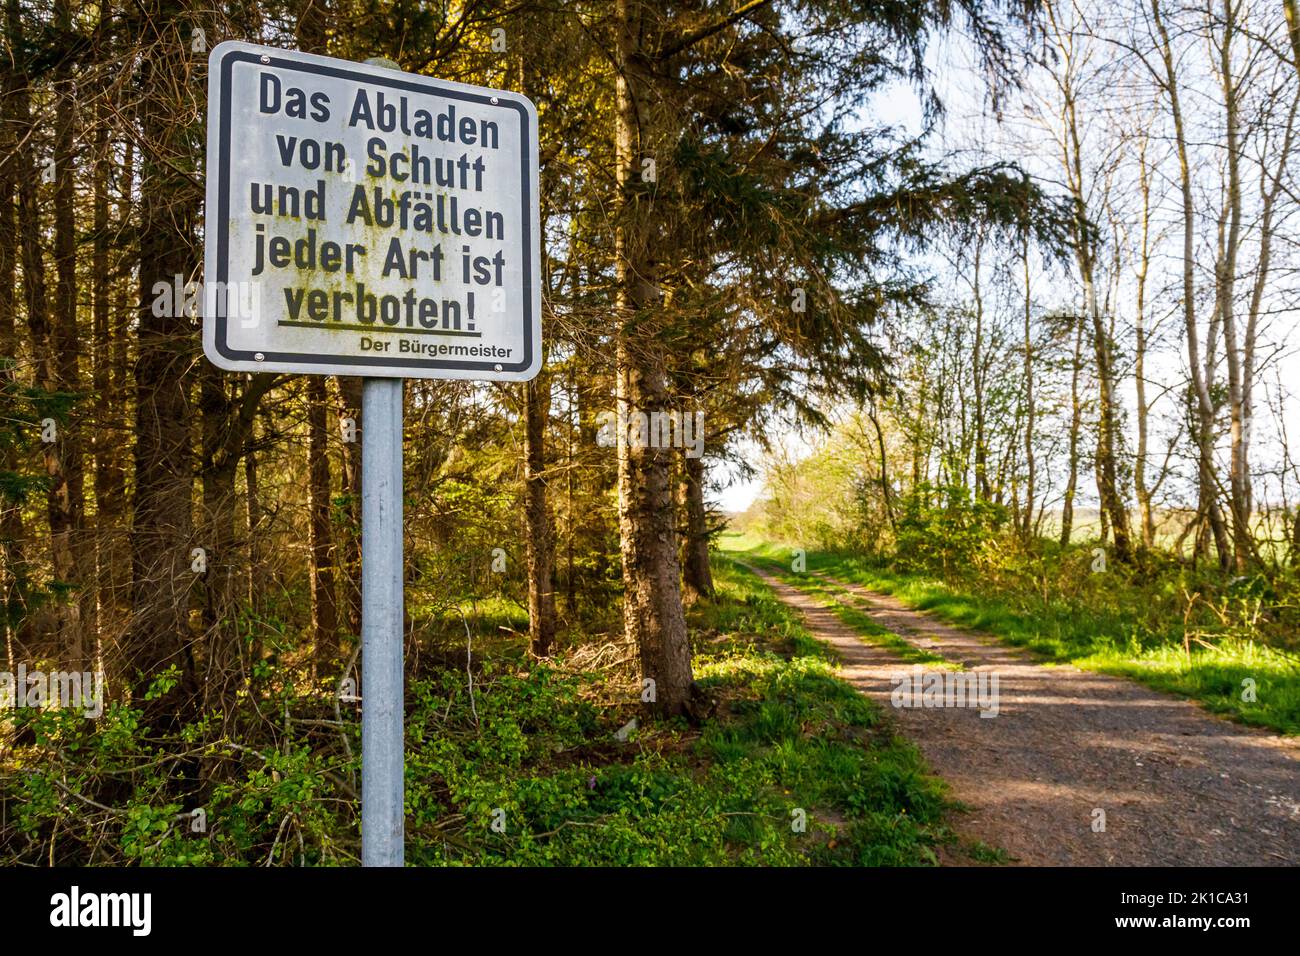 Verbotsschild am Waldweg: Das Abladen von Schutt und Abfällen jeder Art ist verboten! Stock Photo